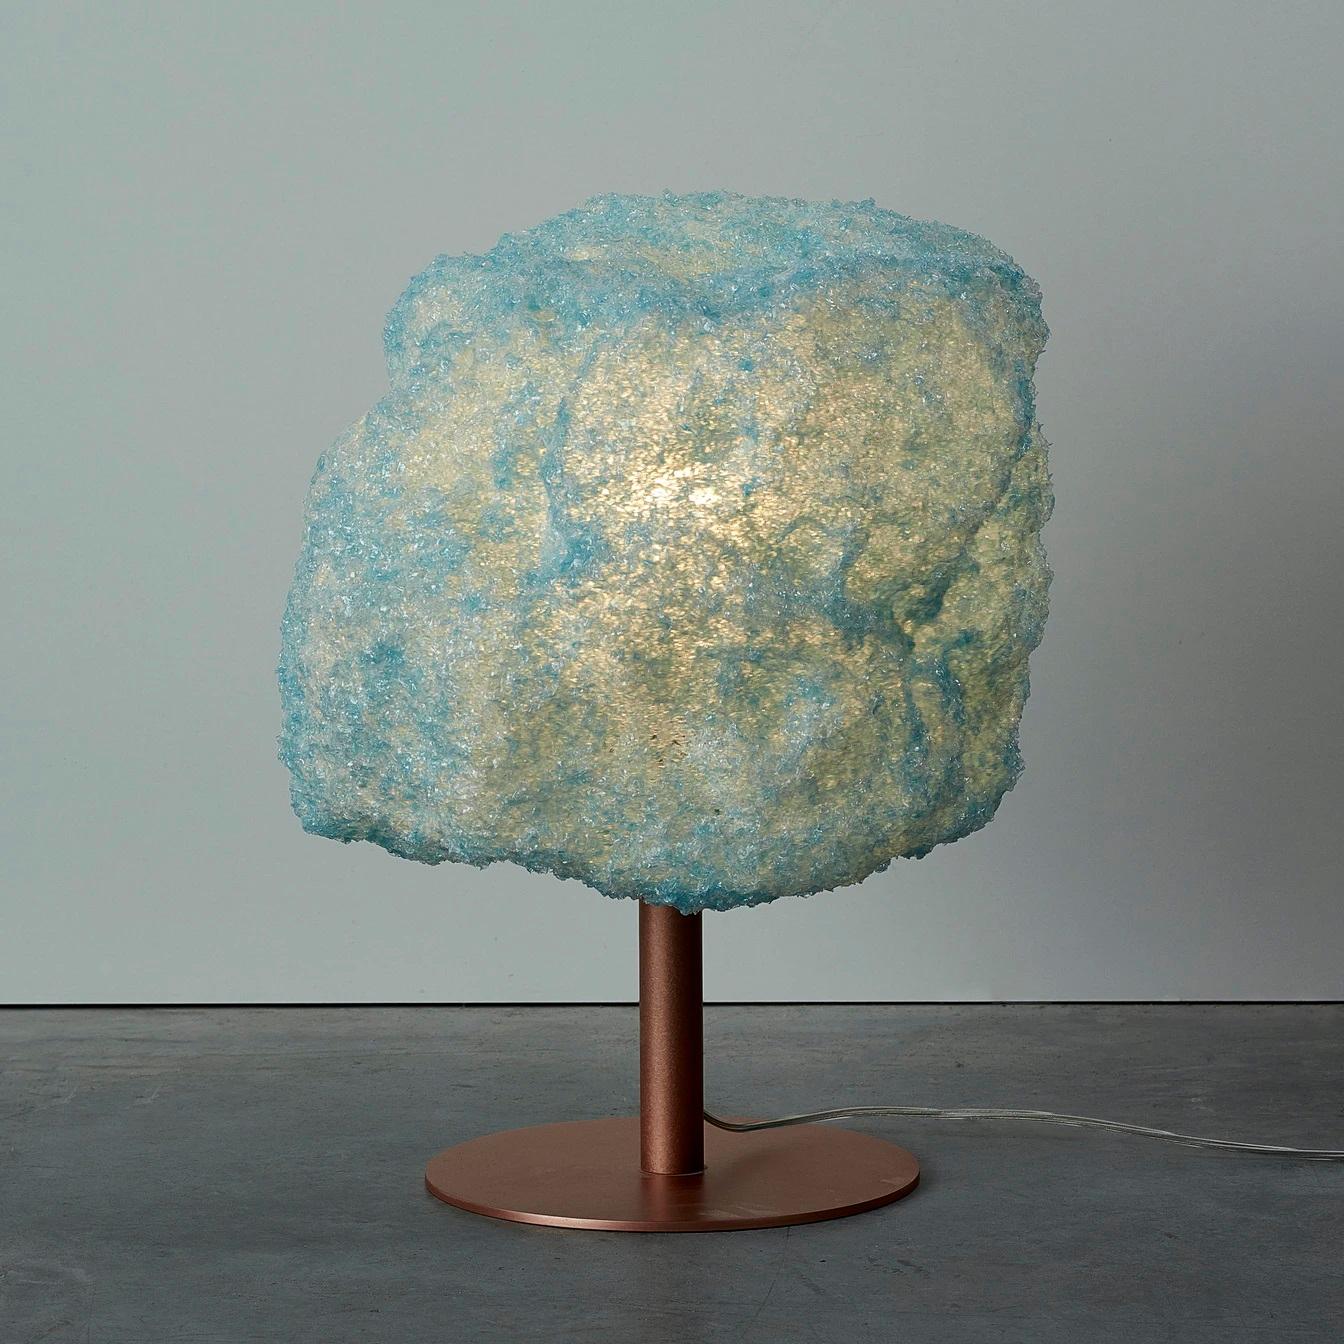 Lampe de table tempête bleue en cuivre de Johannes Hemann
Matériau : Polycarbonate, noyer
Dimensions : Ø 38 x H 45 cm

La série Storm est, de par son concept, l'exemple le plus pur d'un processus de conception, où le concepteur cherche à fixer des